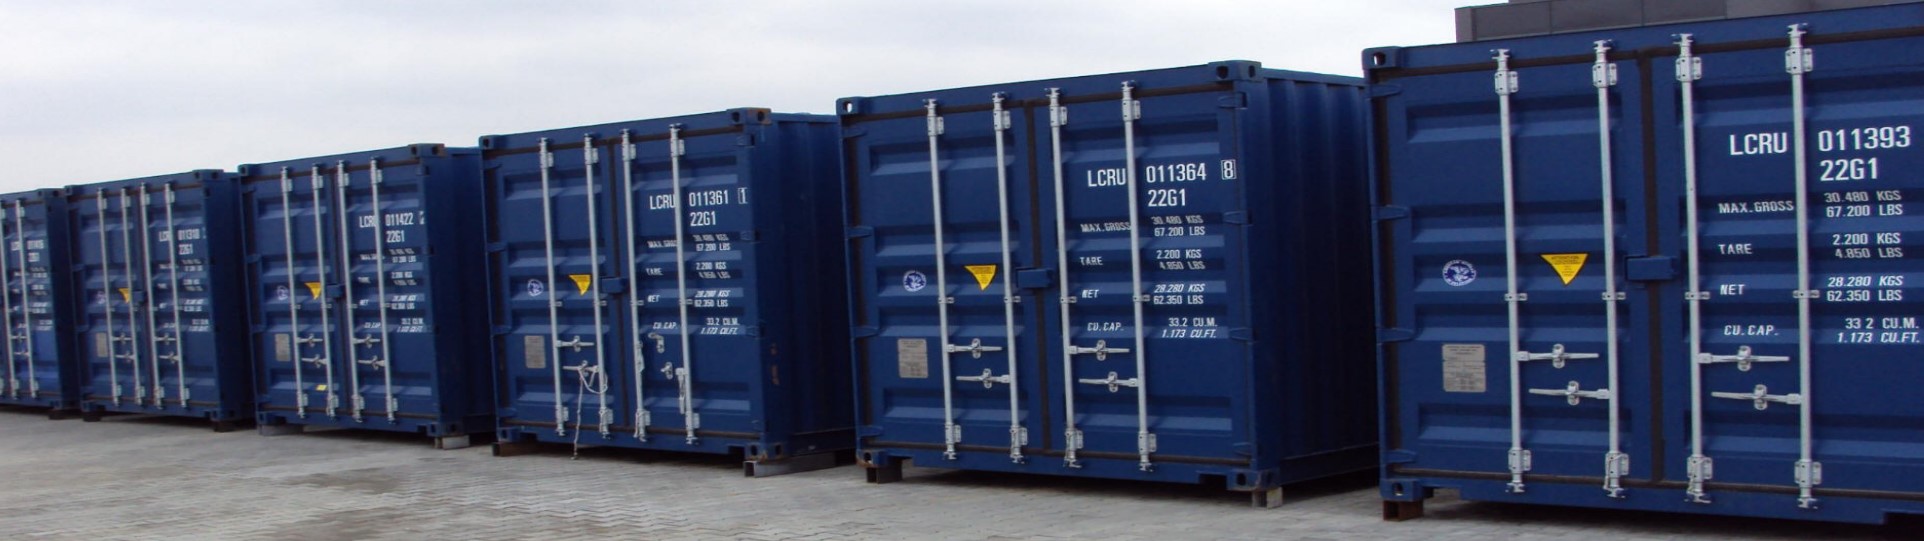 Adattamento dei container marittimi